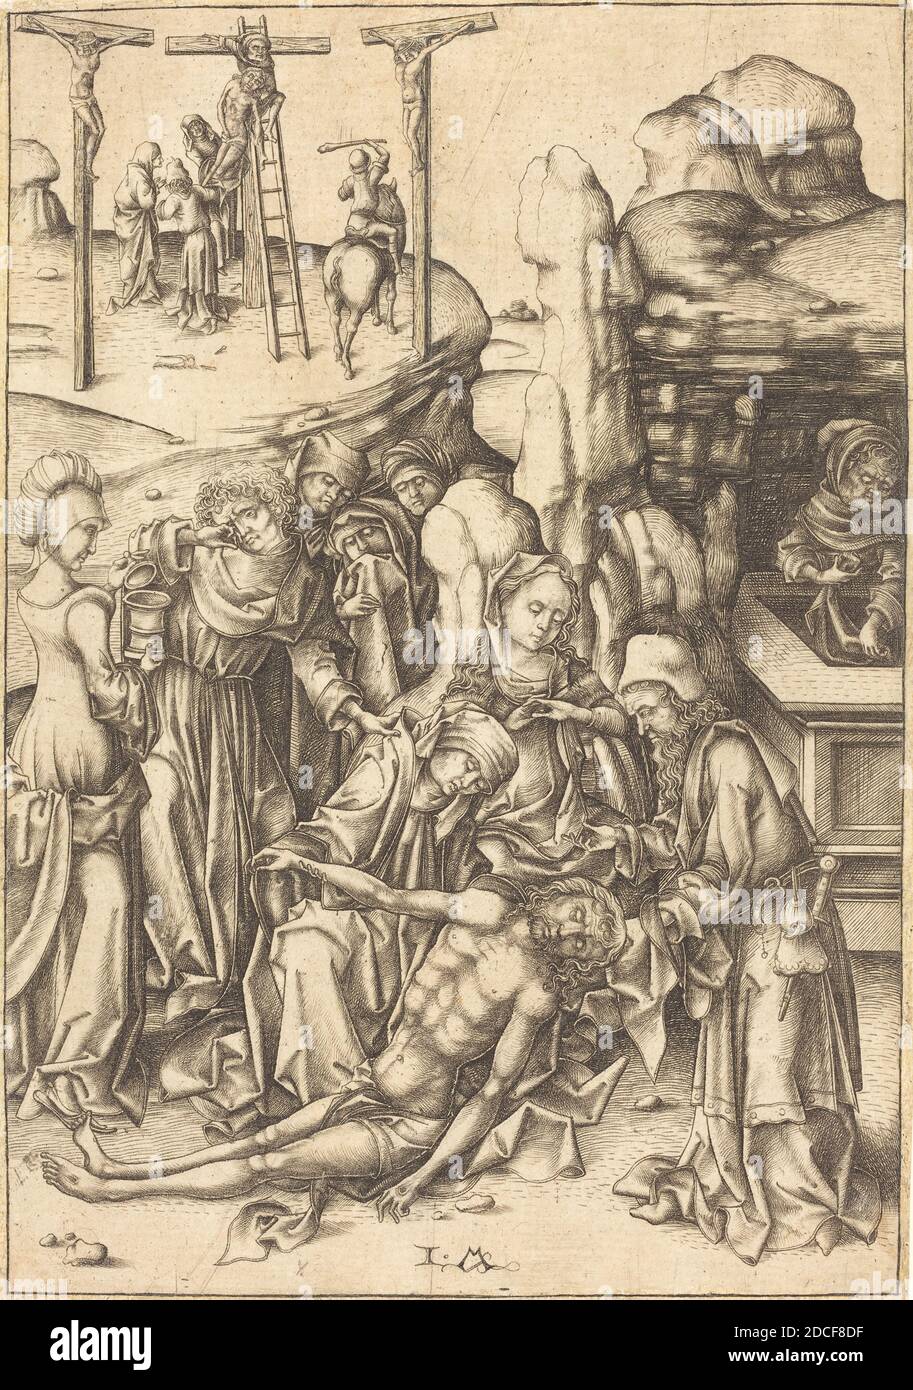 Israhel van Meckenem, (artist), German, c. 1445 - 1503, The Lamentation, Twelve Scenes of the Pasion, (series), c. 1480, engraving Stock Photo